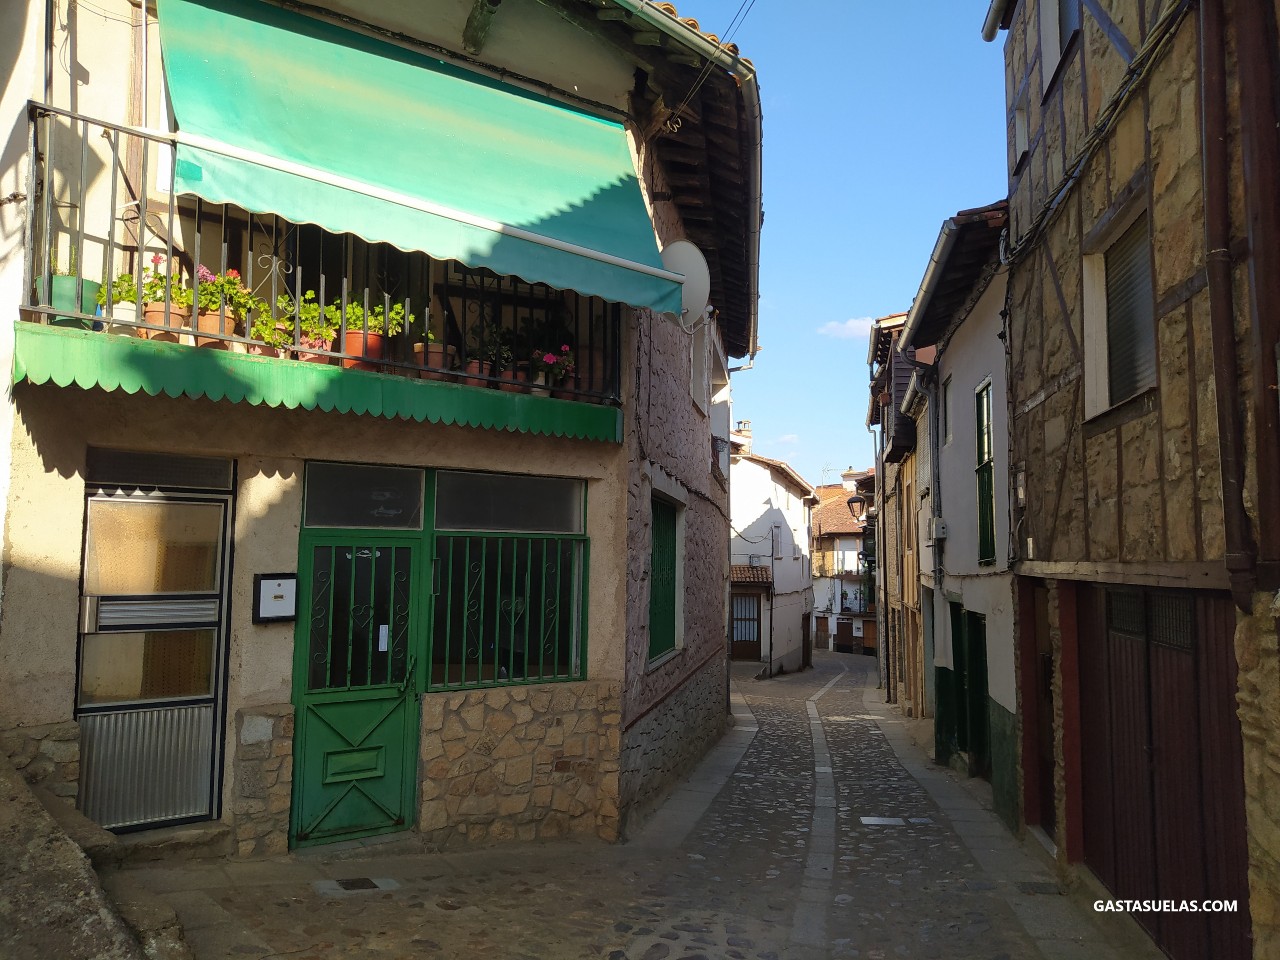 Calle en Garcibuey (Sierra de Francia, Salamanca)